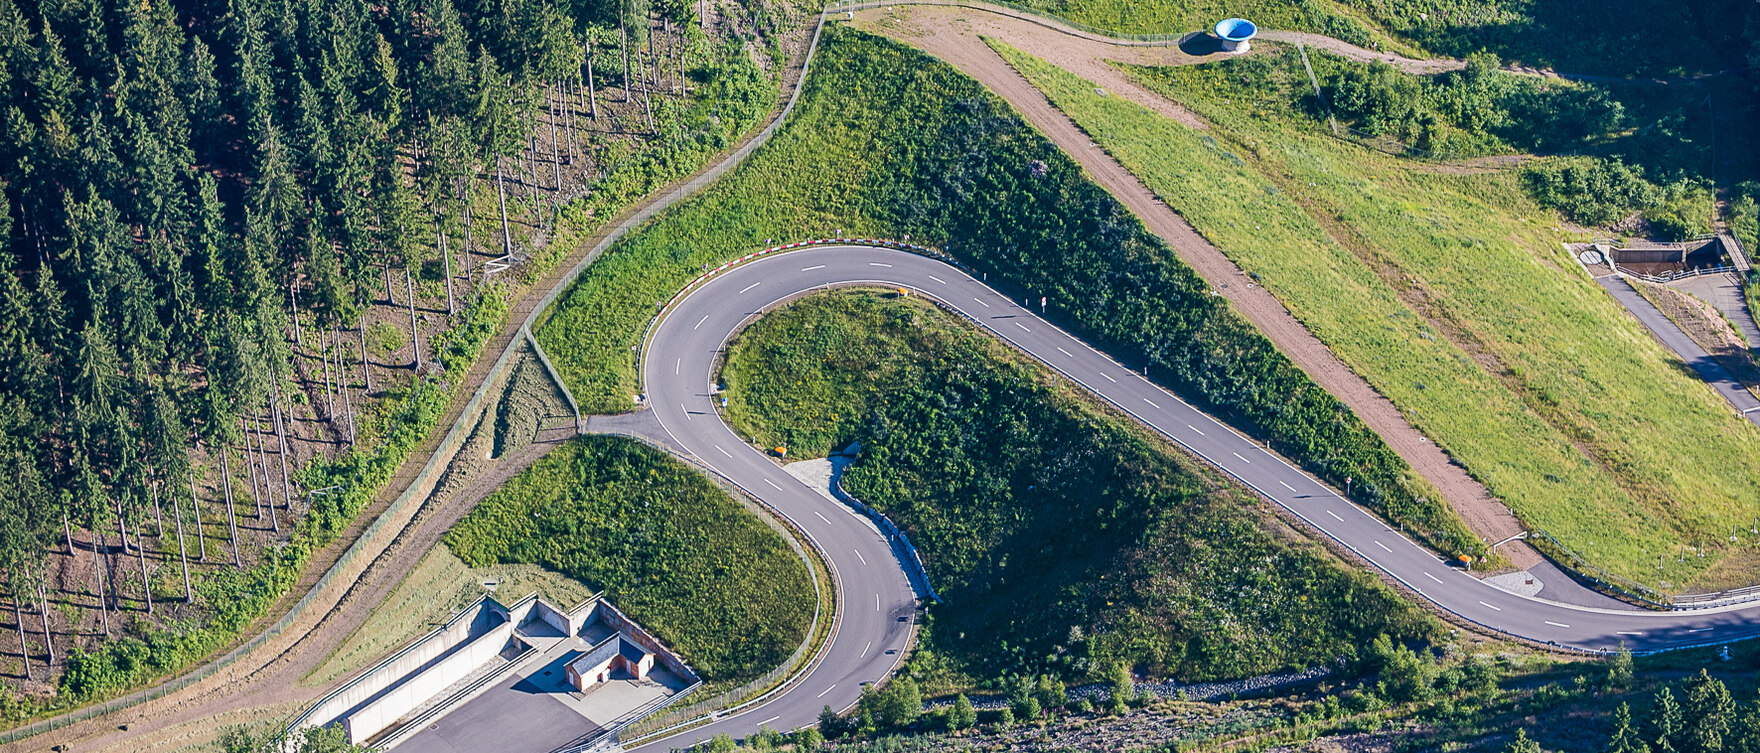 Luftbild auf eine Serpentinenstraße im Grünen